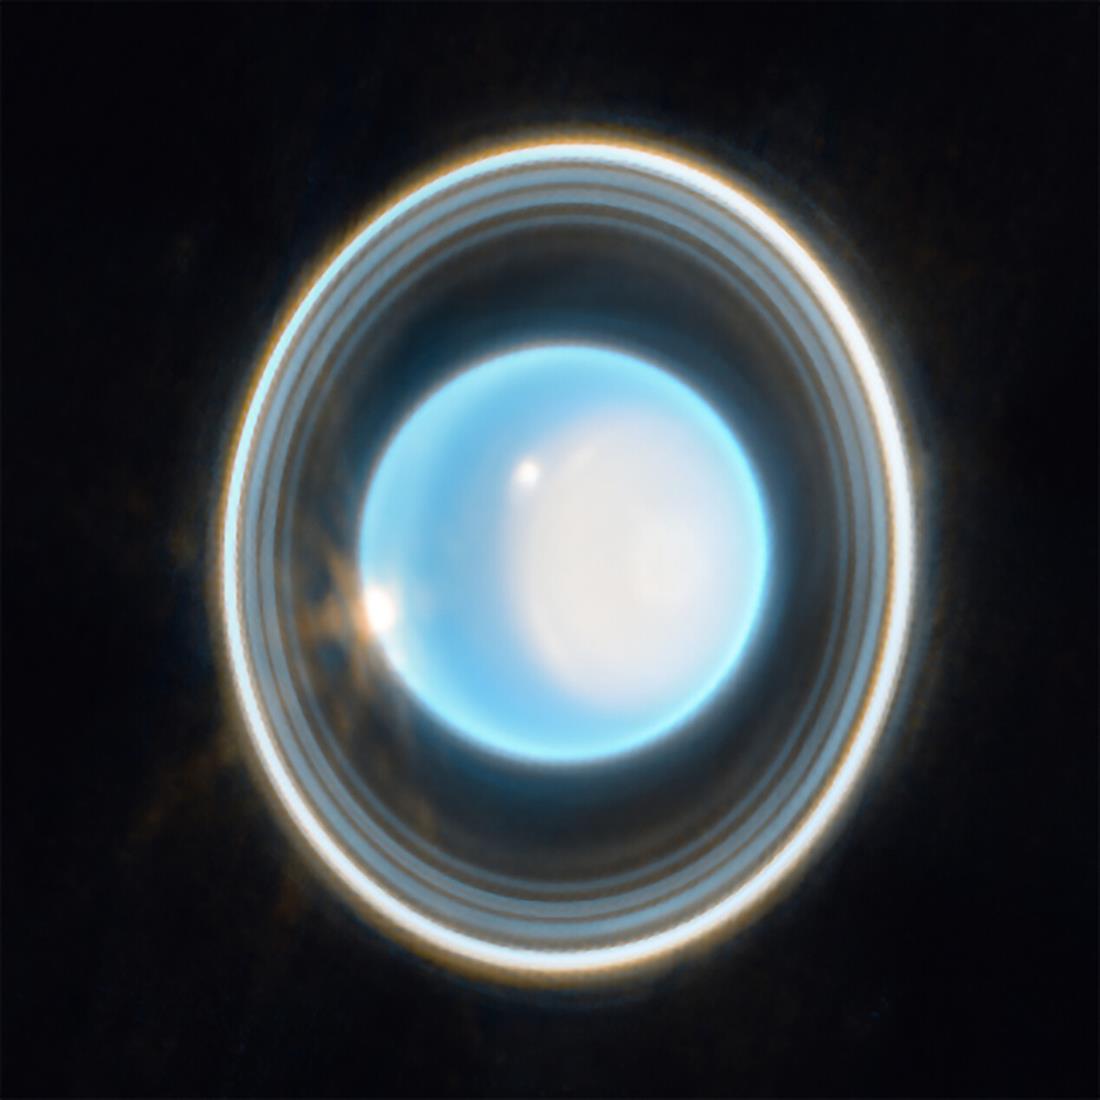 Διάστημα - πλανήτης Ουρανός - διαστημικό τηλεσκόπιο James Webb